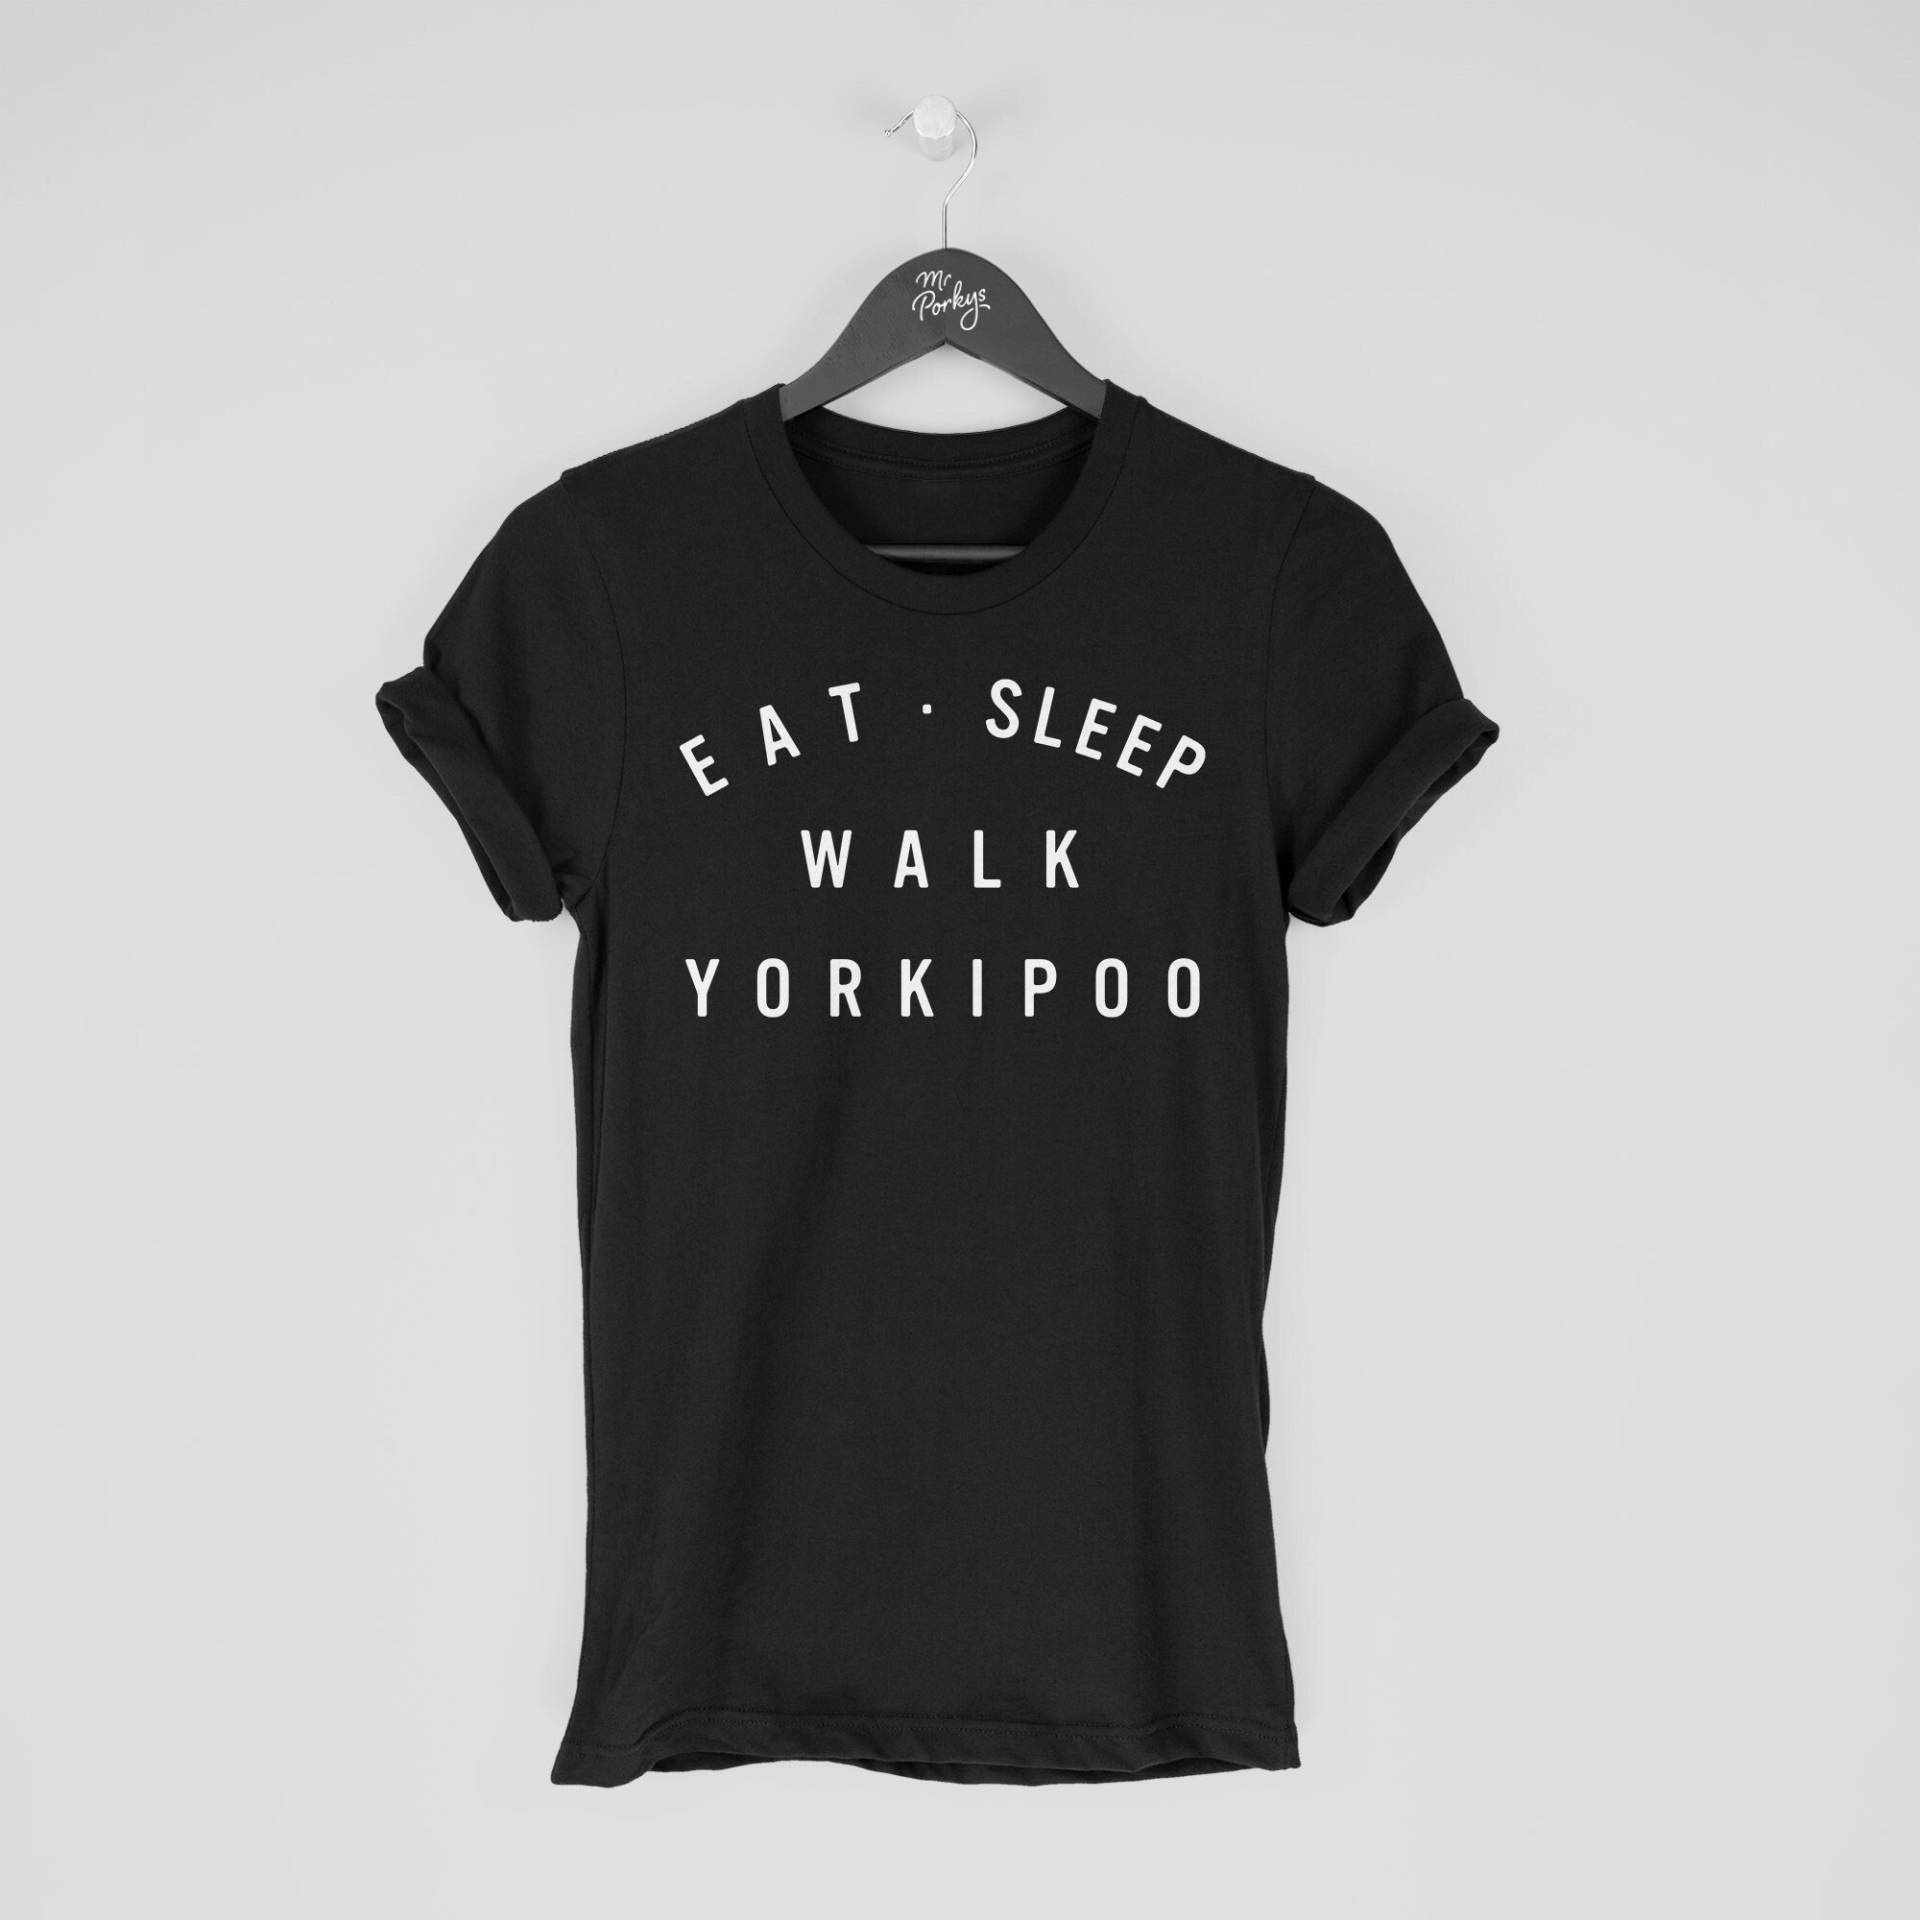 Yorkipoo Shirt, Eat Sleep Walk T-Shirt, Geschenk Für Besitzer, Tshirt von MrPorkysGiftShop